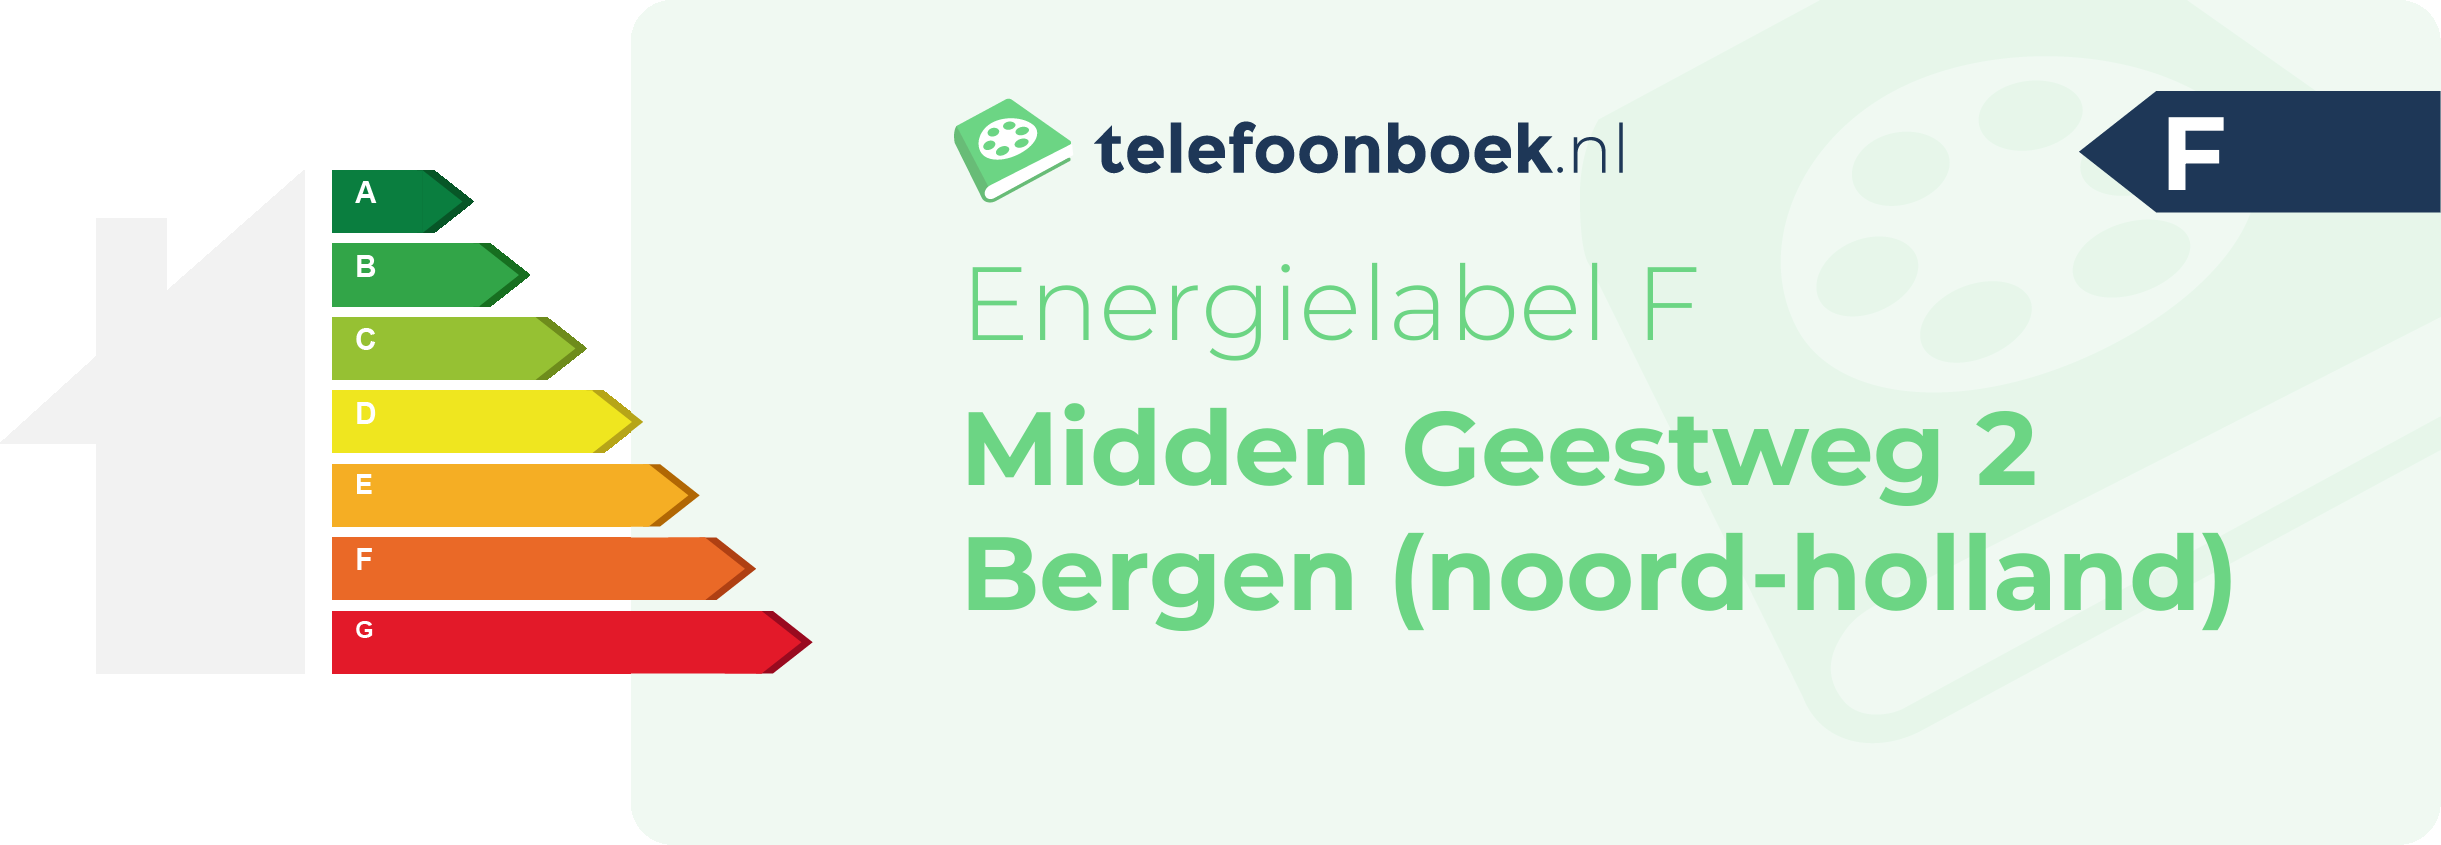 Energielabel Midden Geestweg 2 Bergen (Noord-Holland)